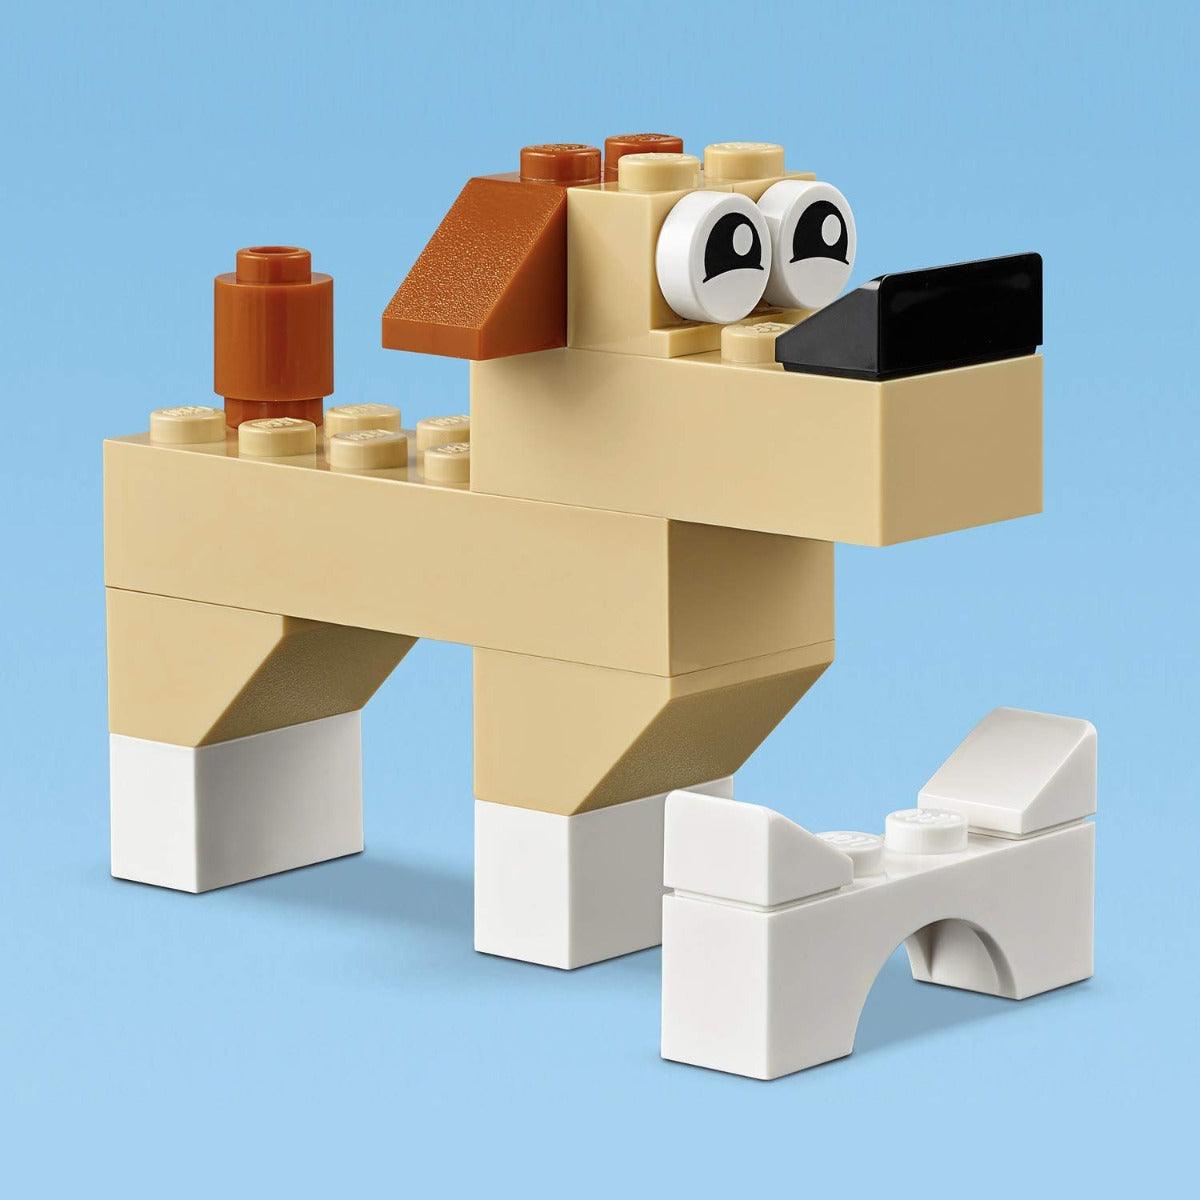 LEGO Classic Brick Set, Building Kit, 300 Pieces, Ages 4+